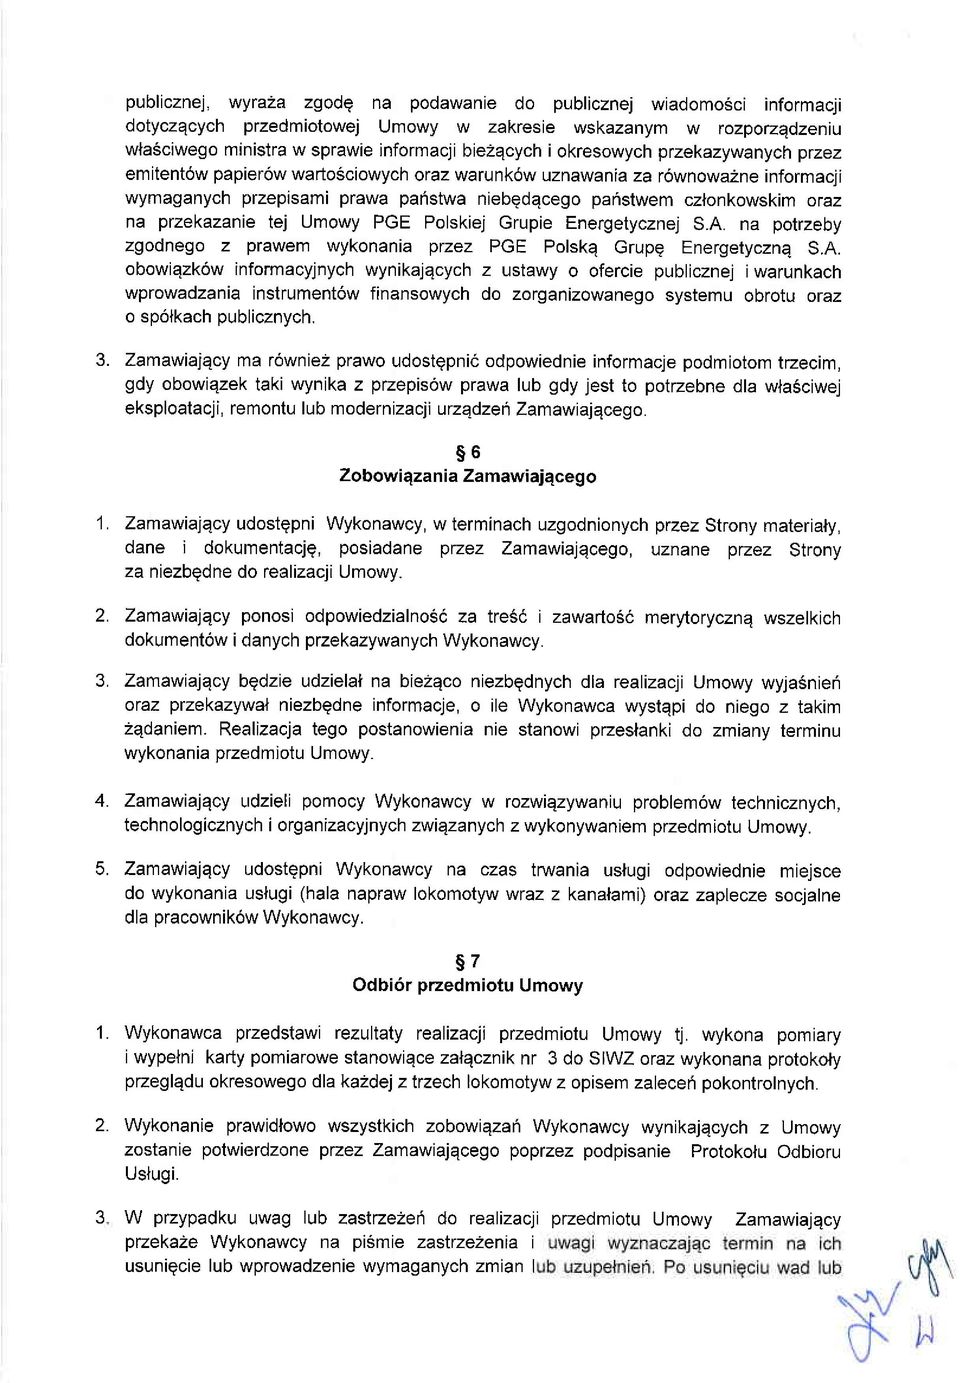 przekazanie tej Umowy PGE Polskiej Grupie Energetycznej S.A.